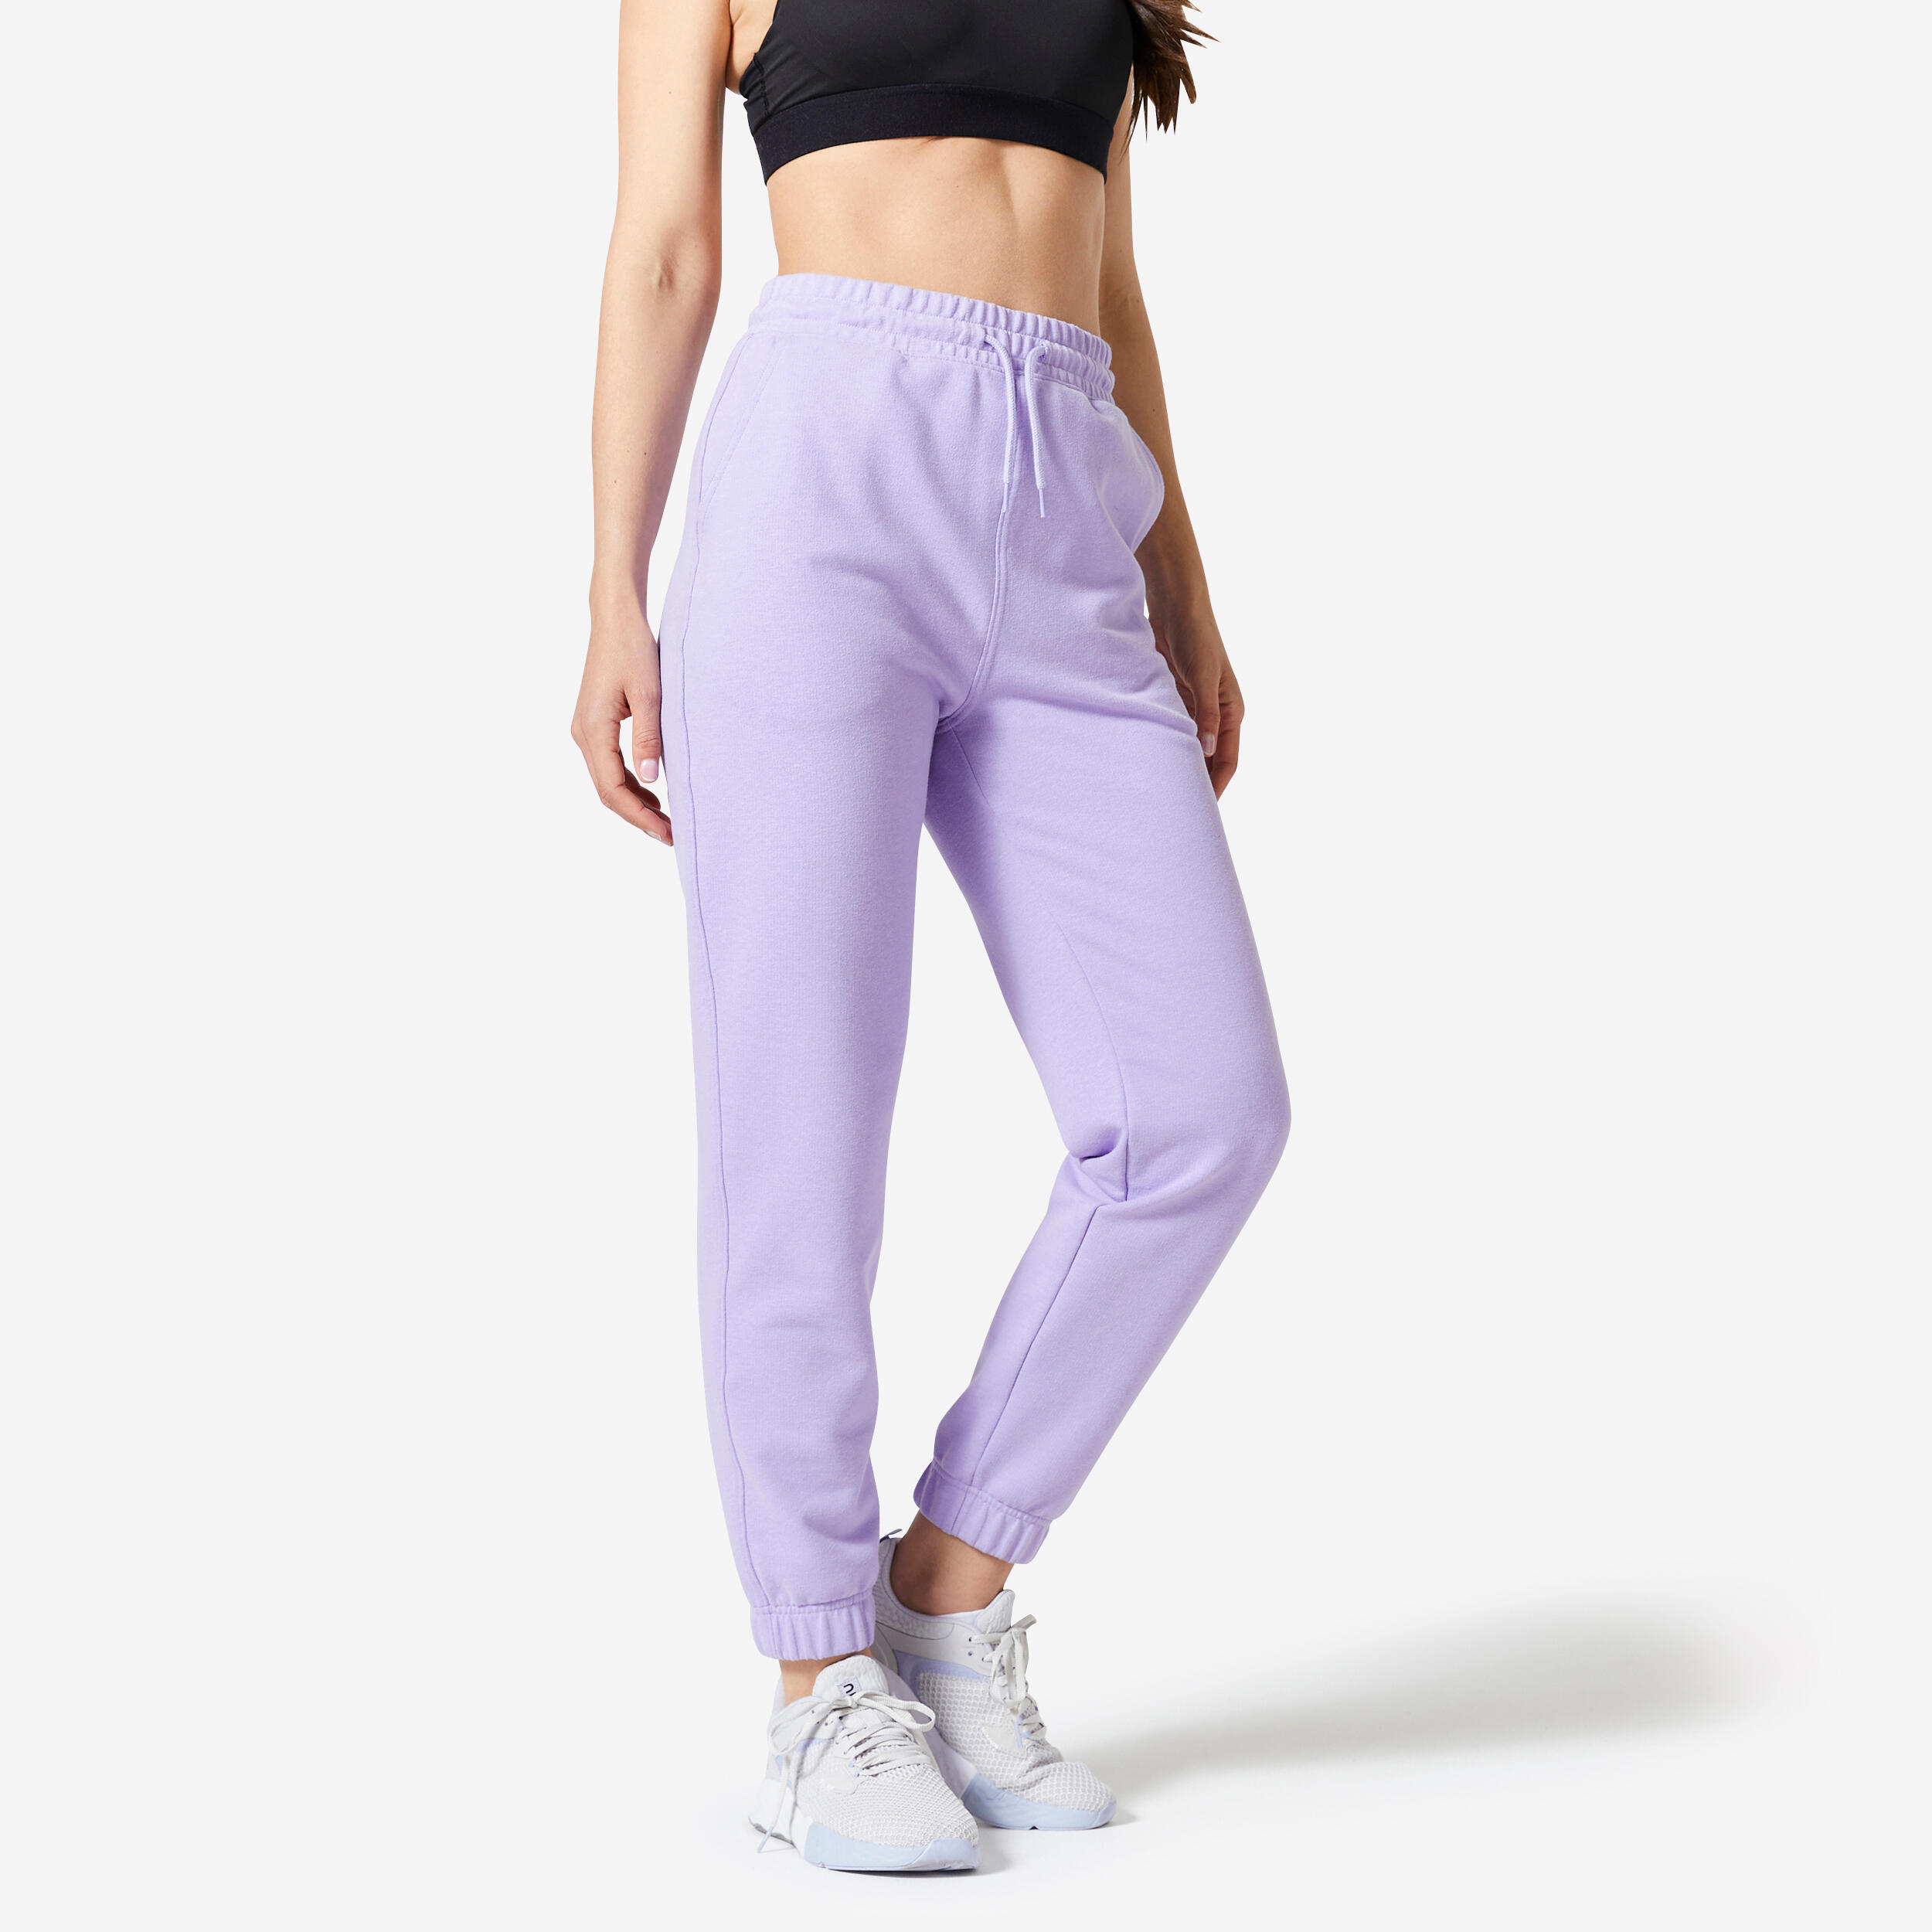 Pantalon de sport femme – Essentials 500 violet